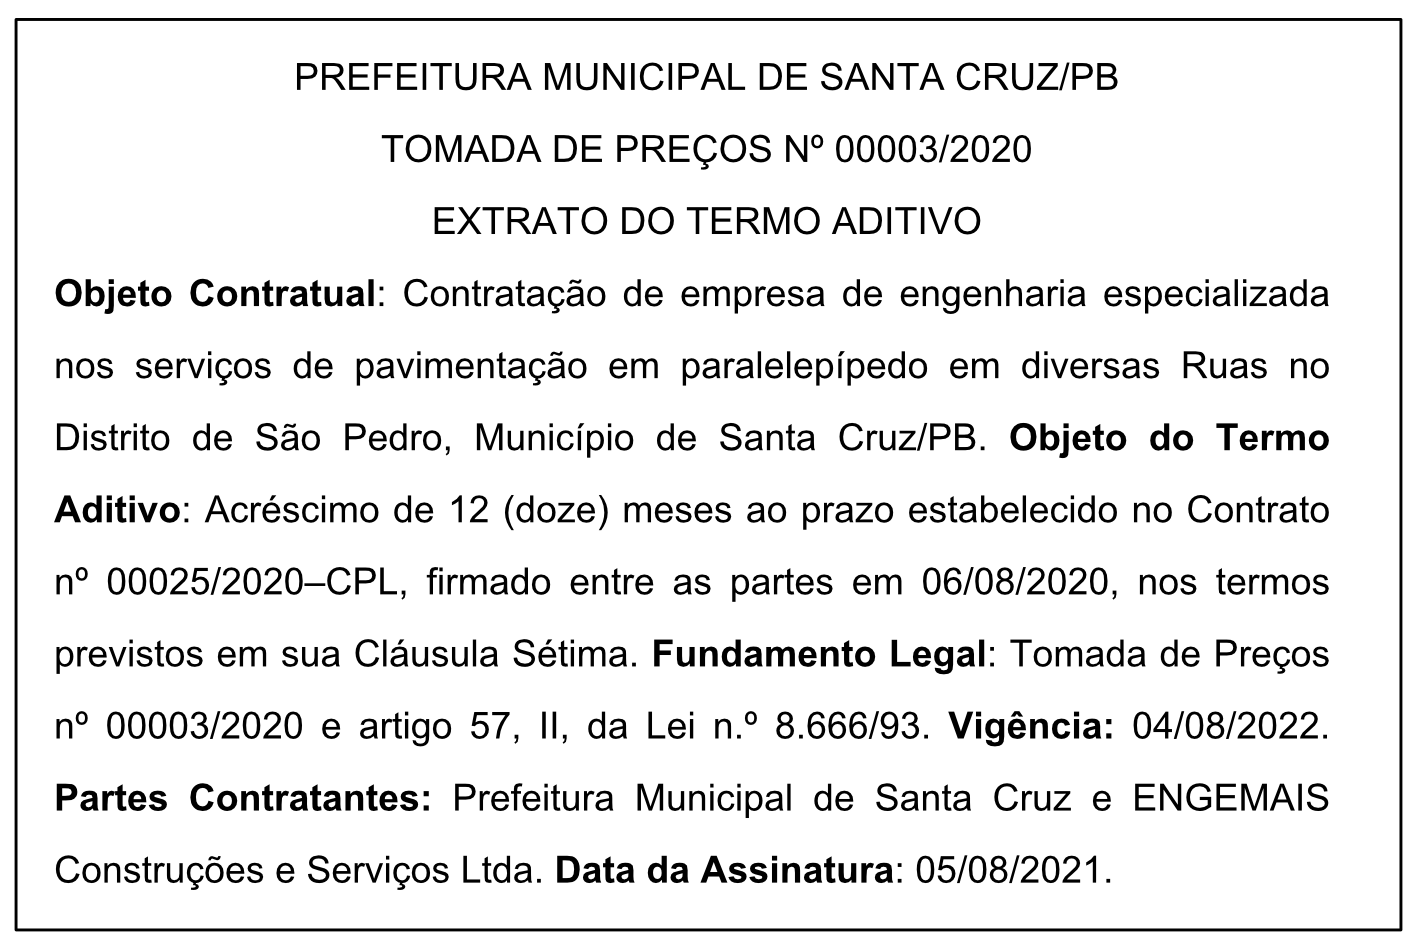 PREFEITURA MUNICIPAL DE SANTA CRUZ – TOMADA DE PREÇOS Nº 00003/2020 – EXTRATO DO TERMO ADITIVO